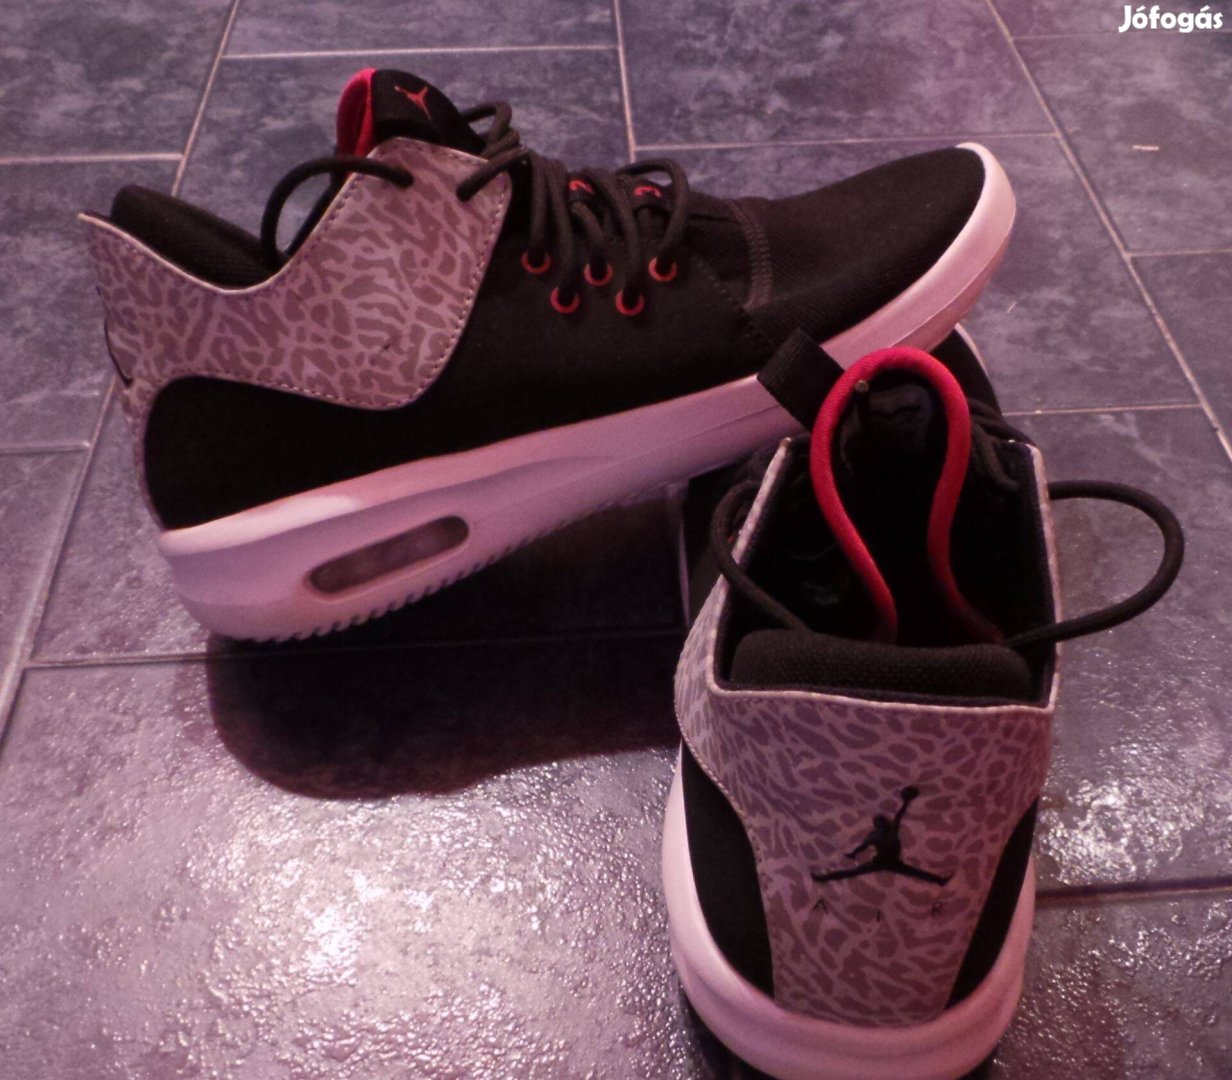 Nike Jordan First Class Cement